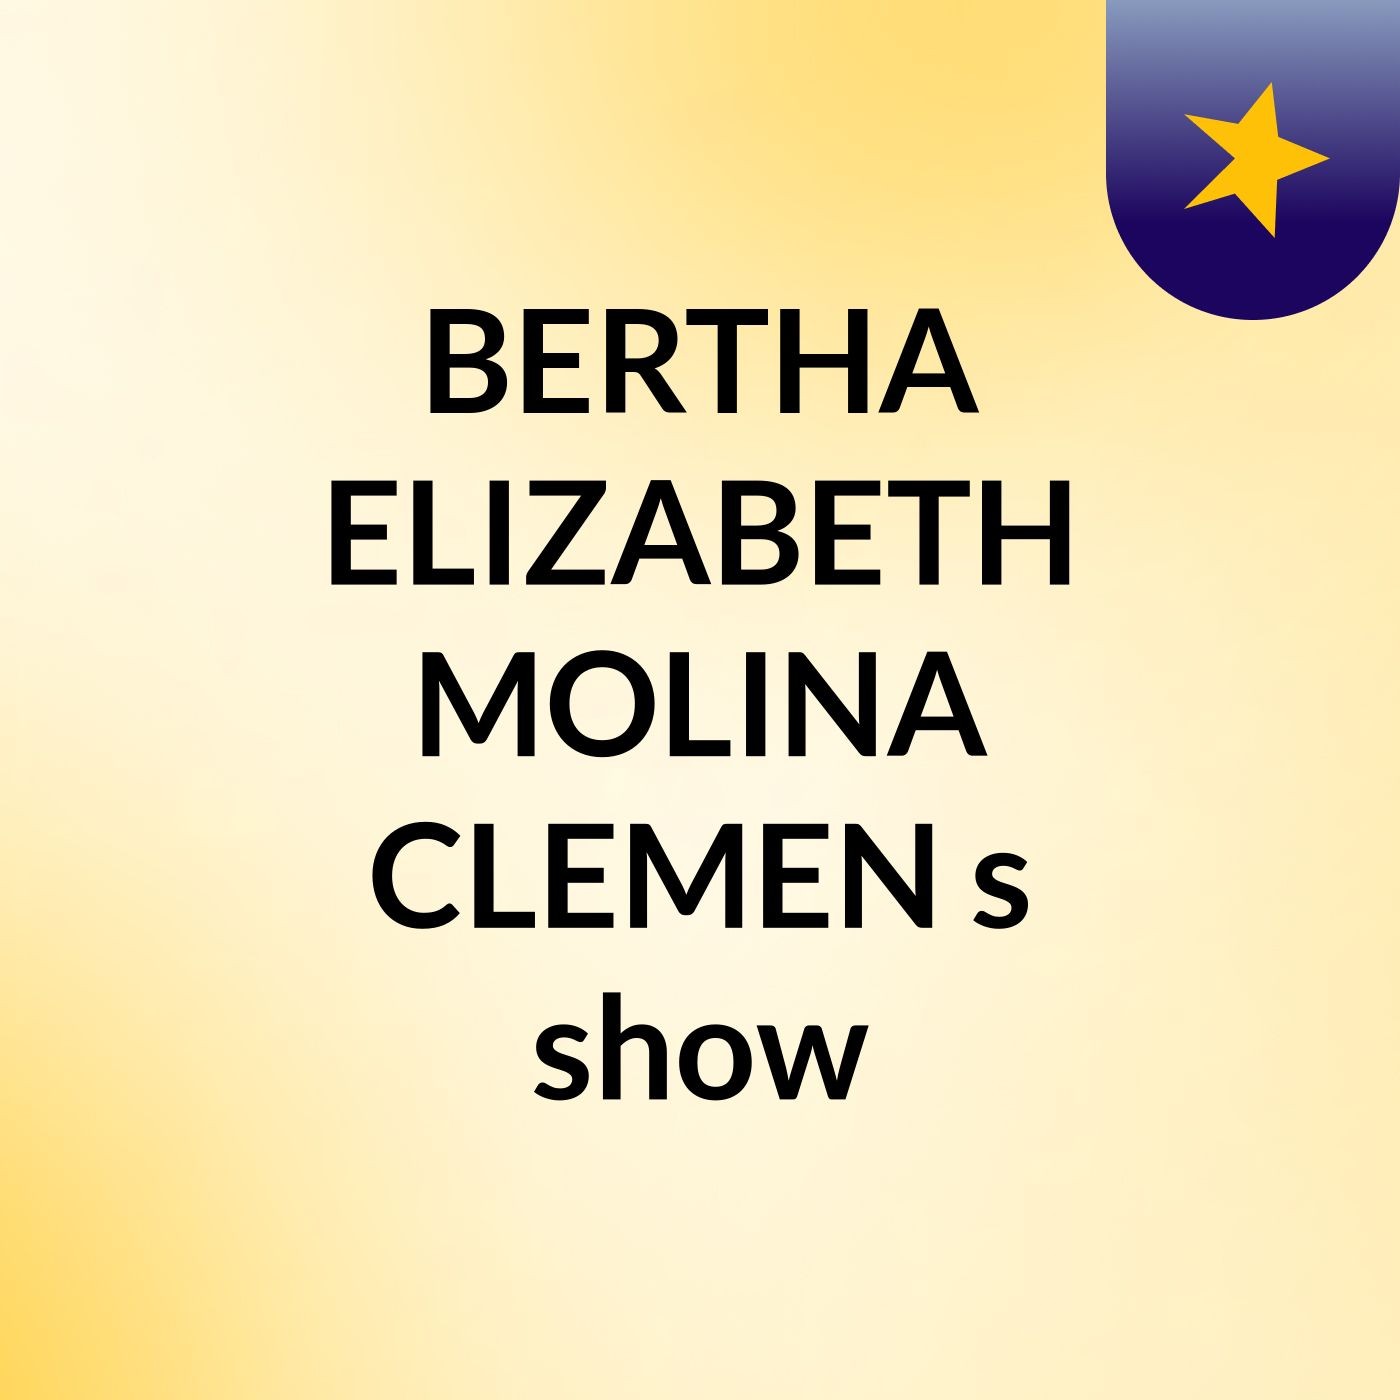 BERTHA ELIZABETH MOLINA CLEMEN's show